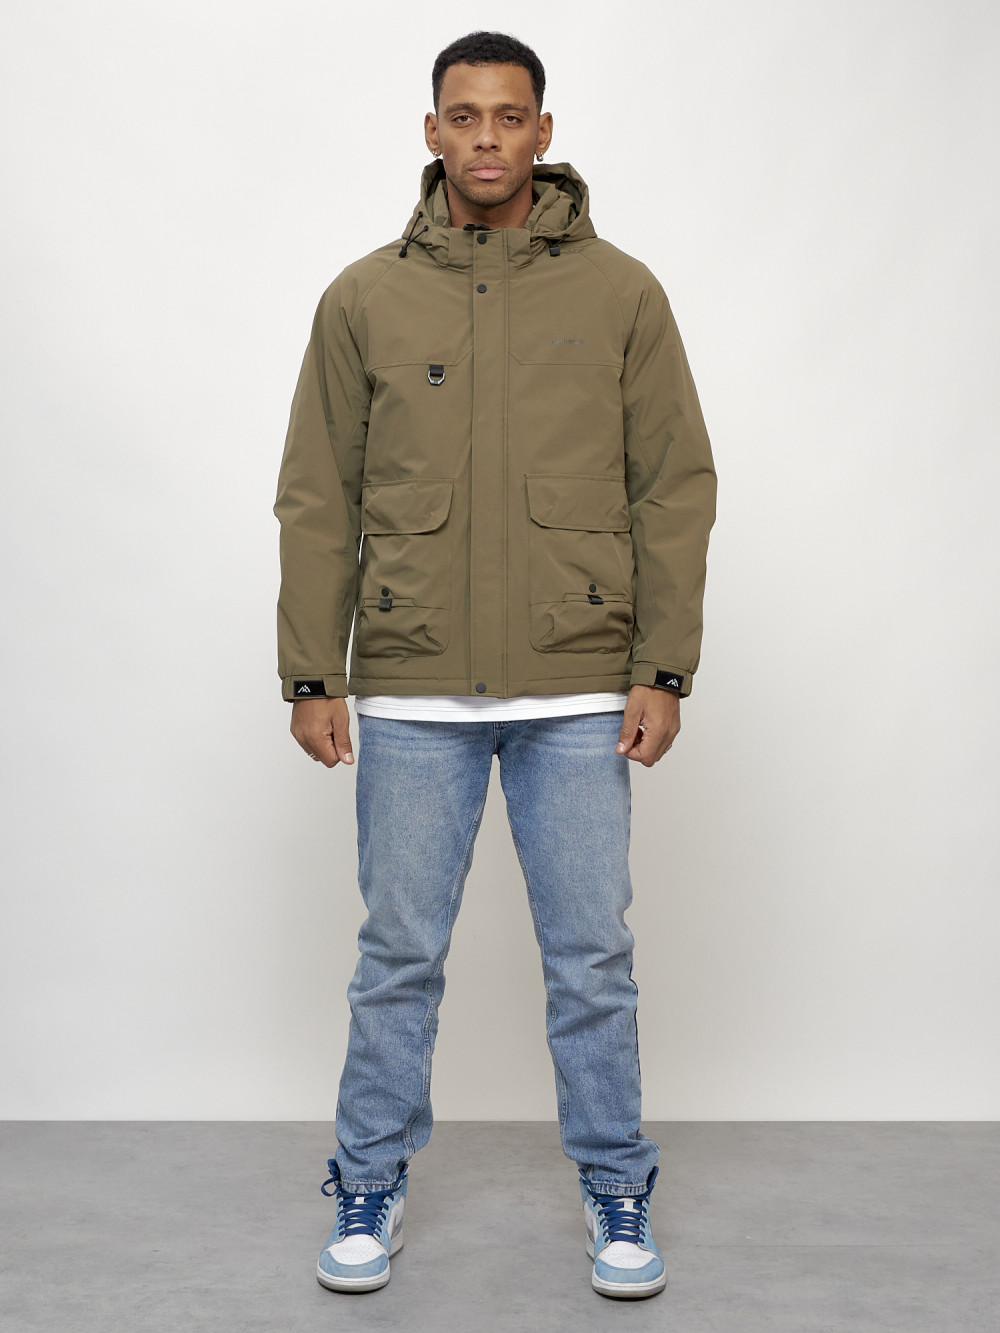 Куртка молодежная мужская весенняя с капюшоном темно-бежевого цвета 708TB